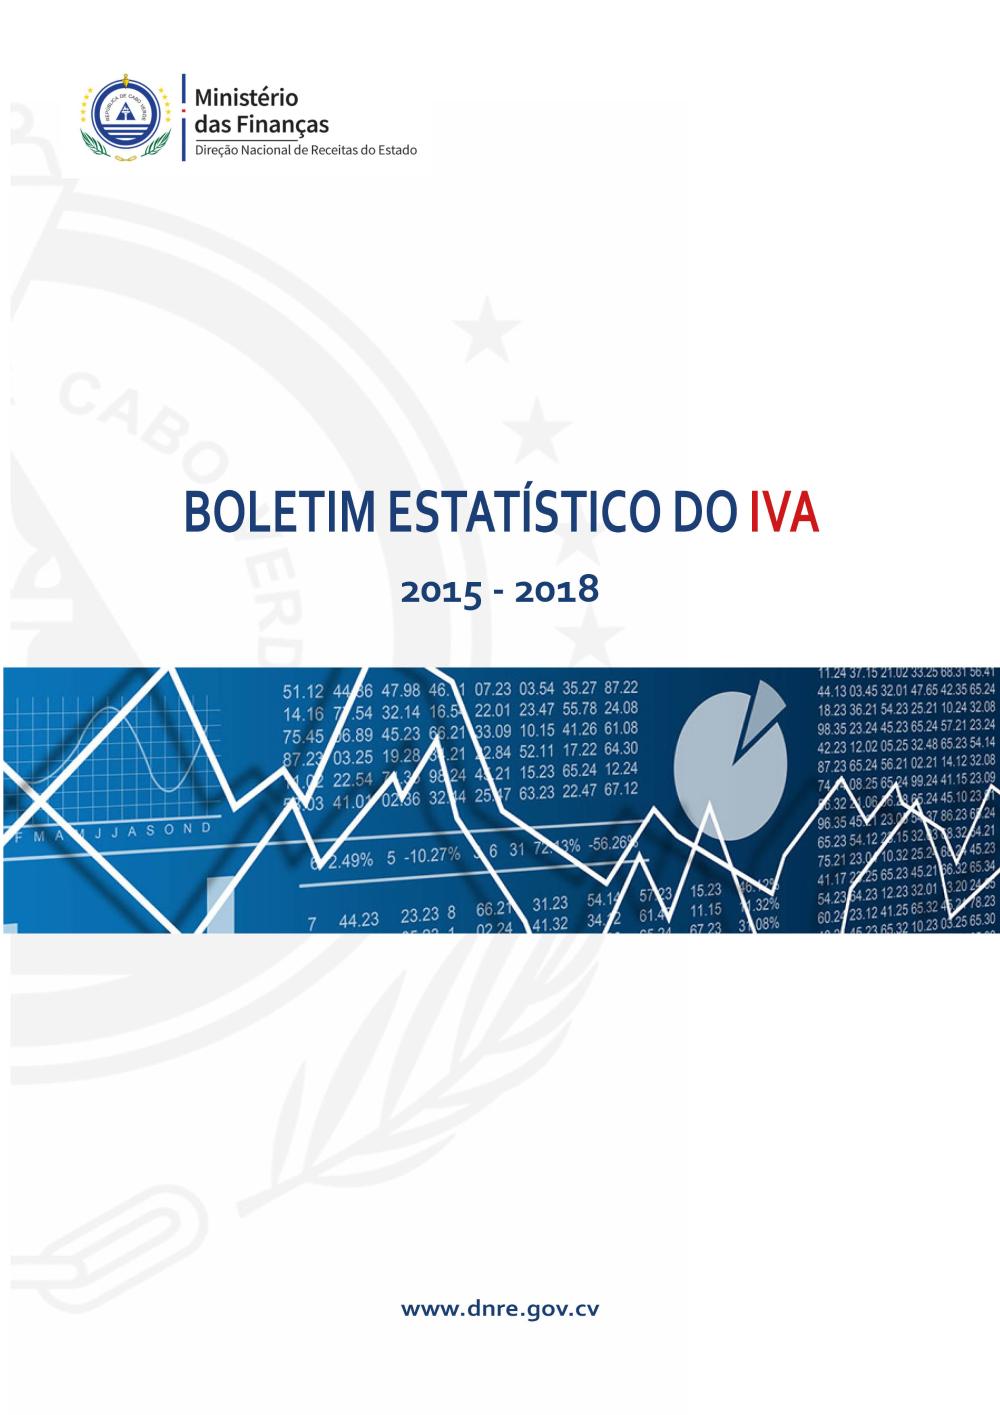 Boletim Estatístico do IVA já está disponível para consulta - Asset Display  Page - Direção Nacional das Receitas de Estado - Ministério das Finanças